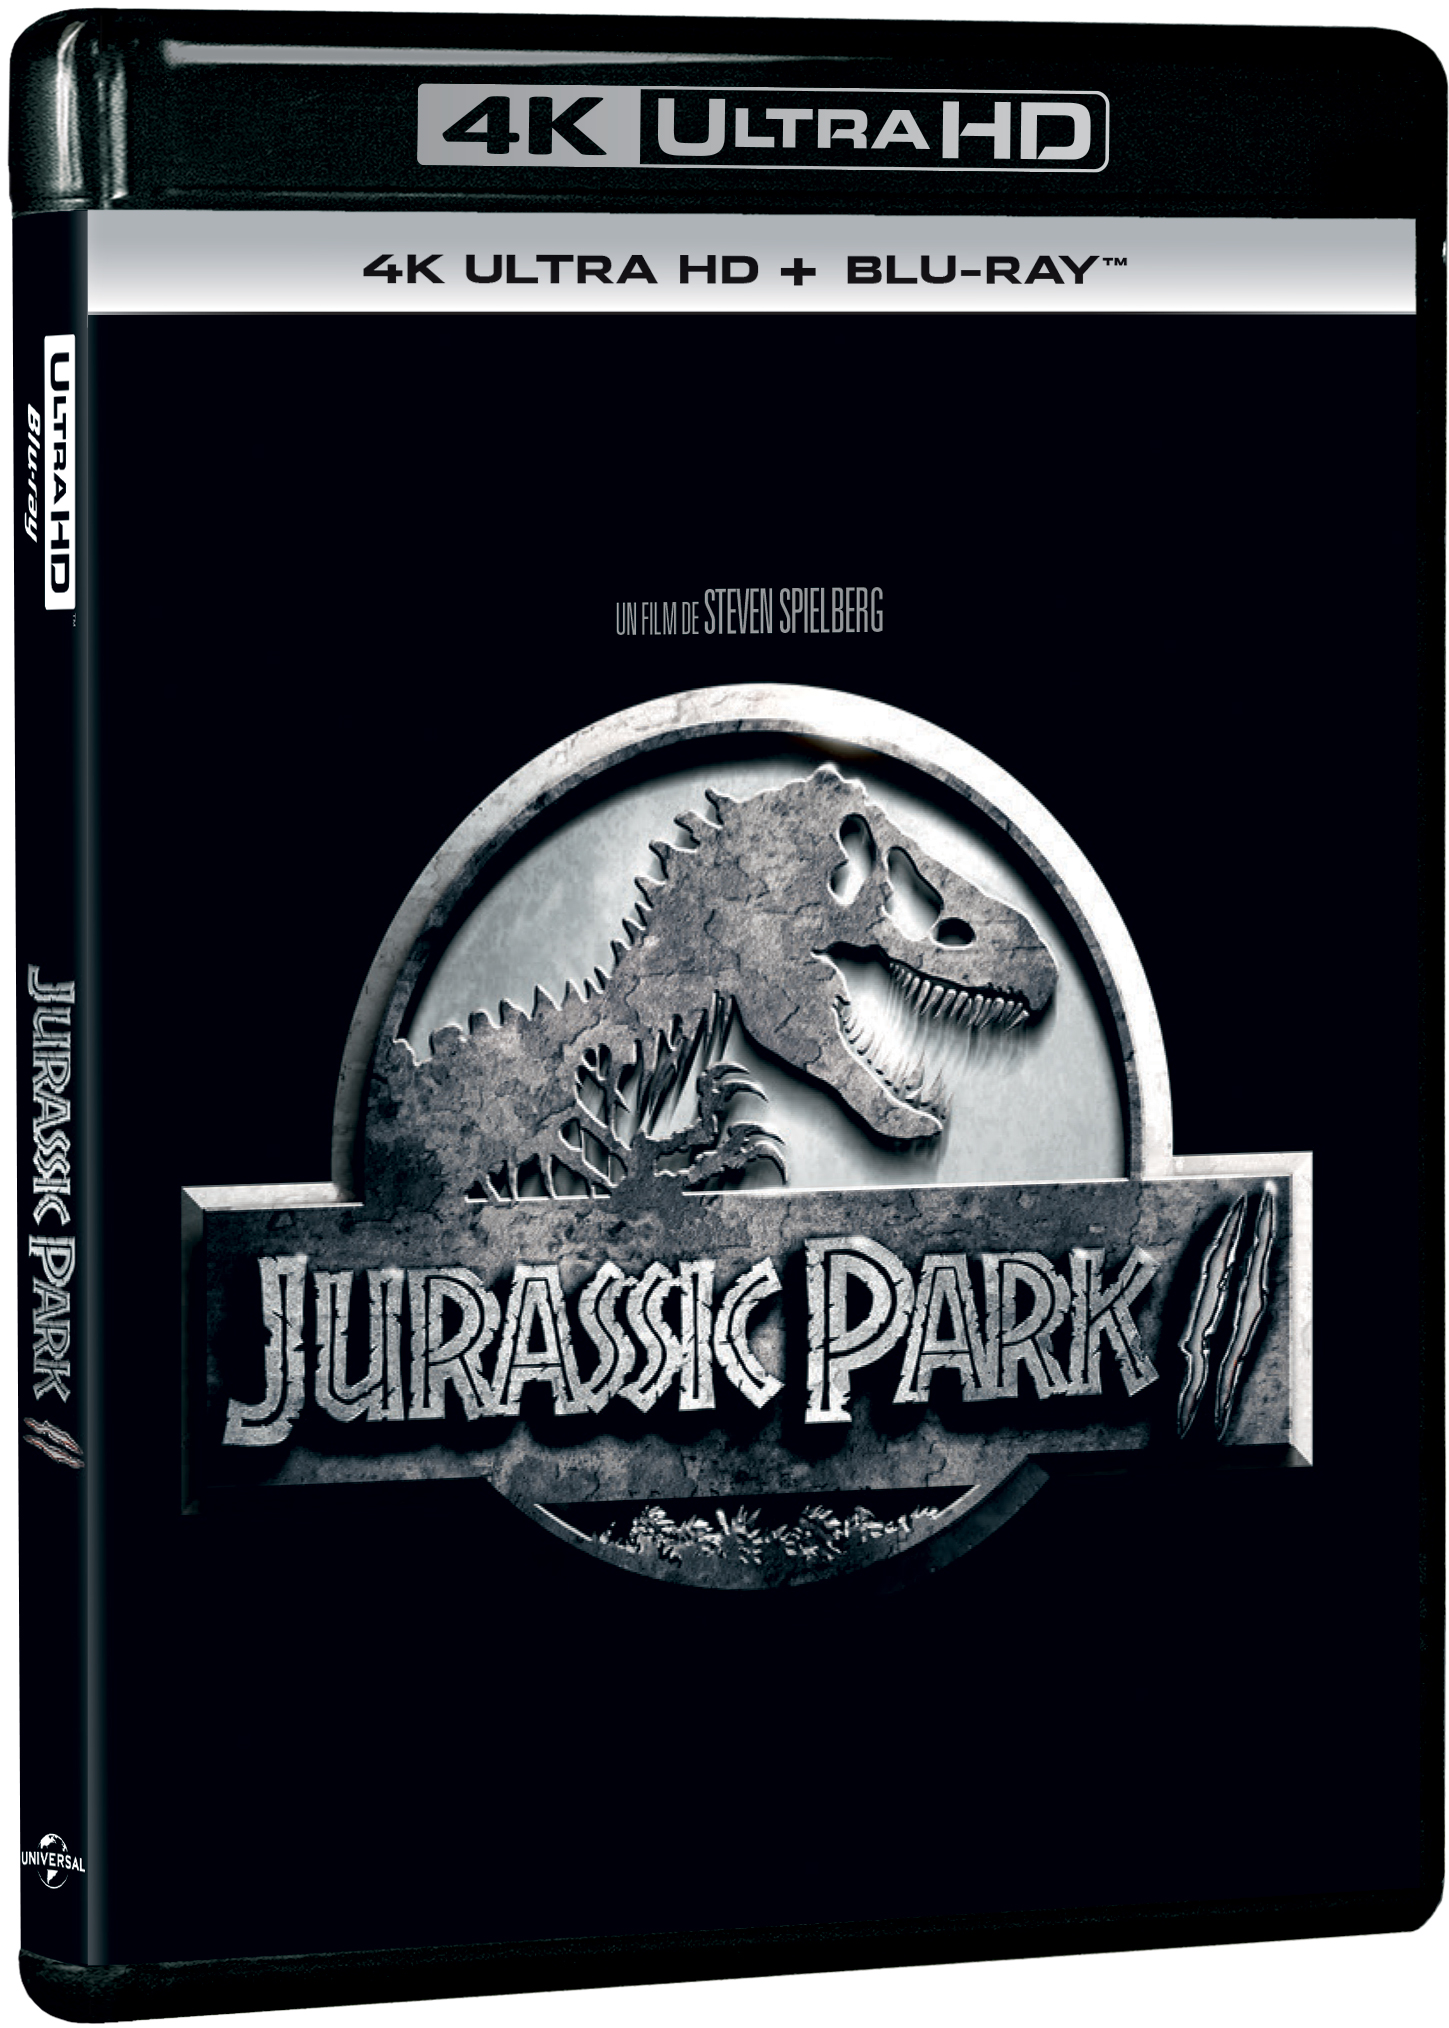 Jurassic Park II 4K UHD (Blu Ray Disc) / The Lost World: Jurassic Park | Steven Spielberg